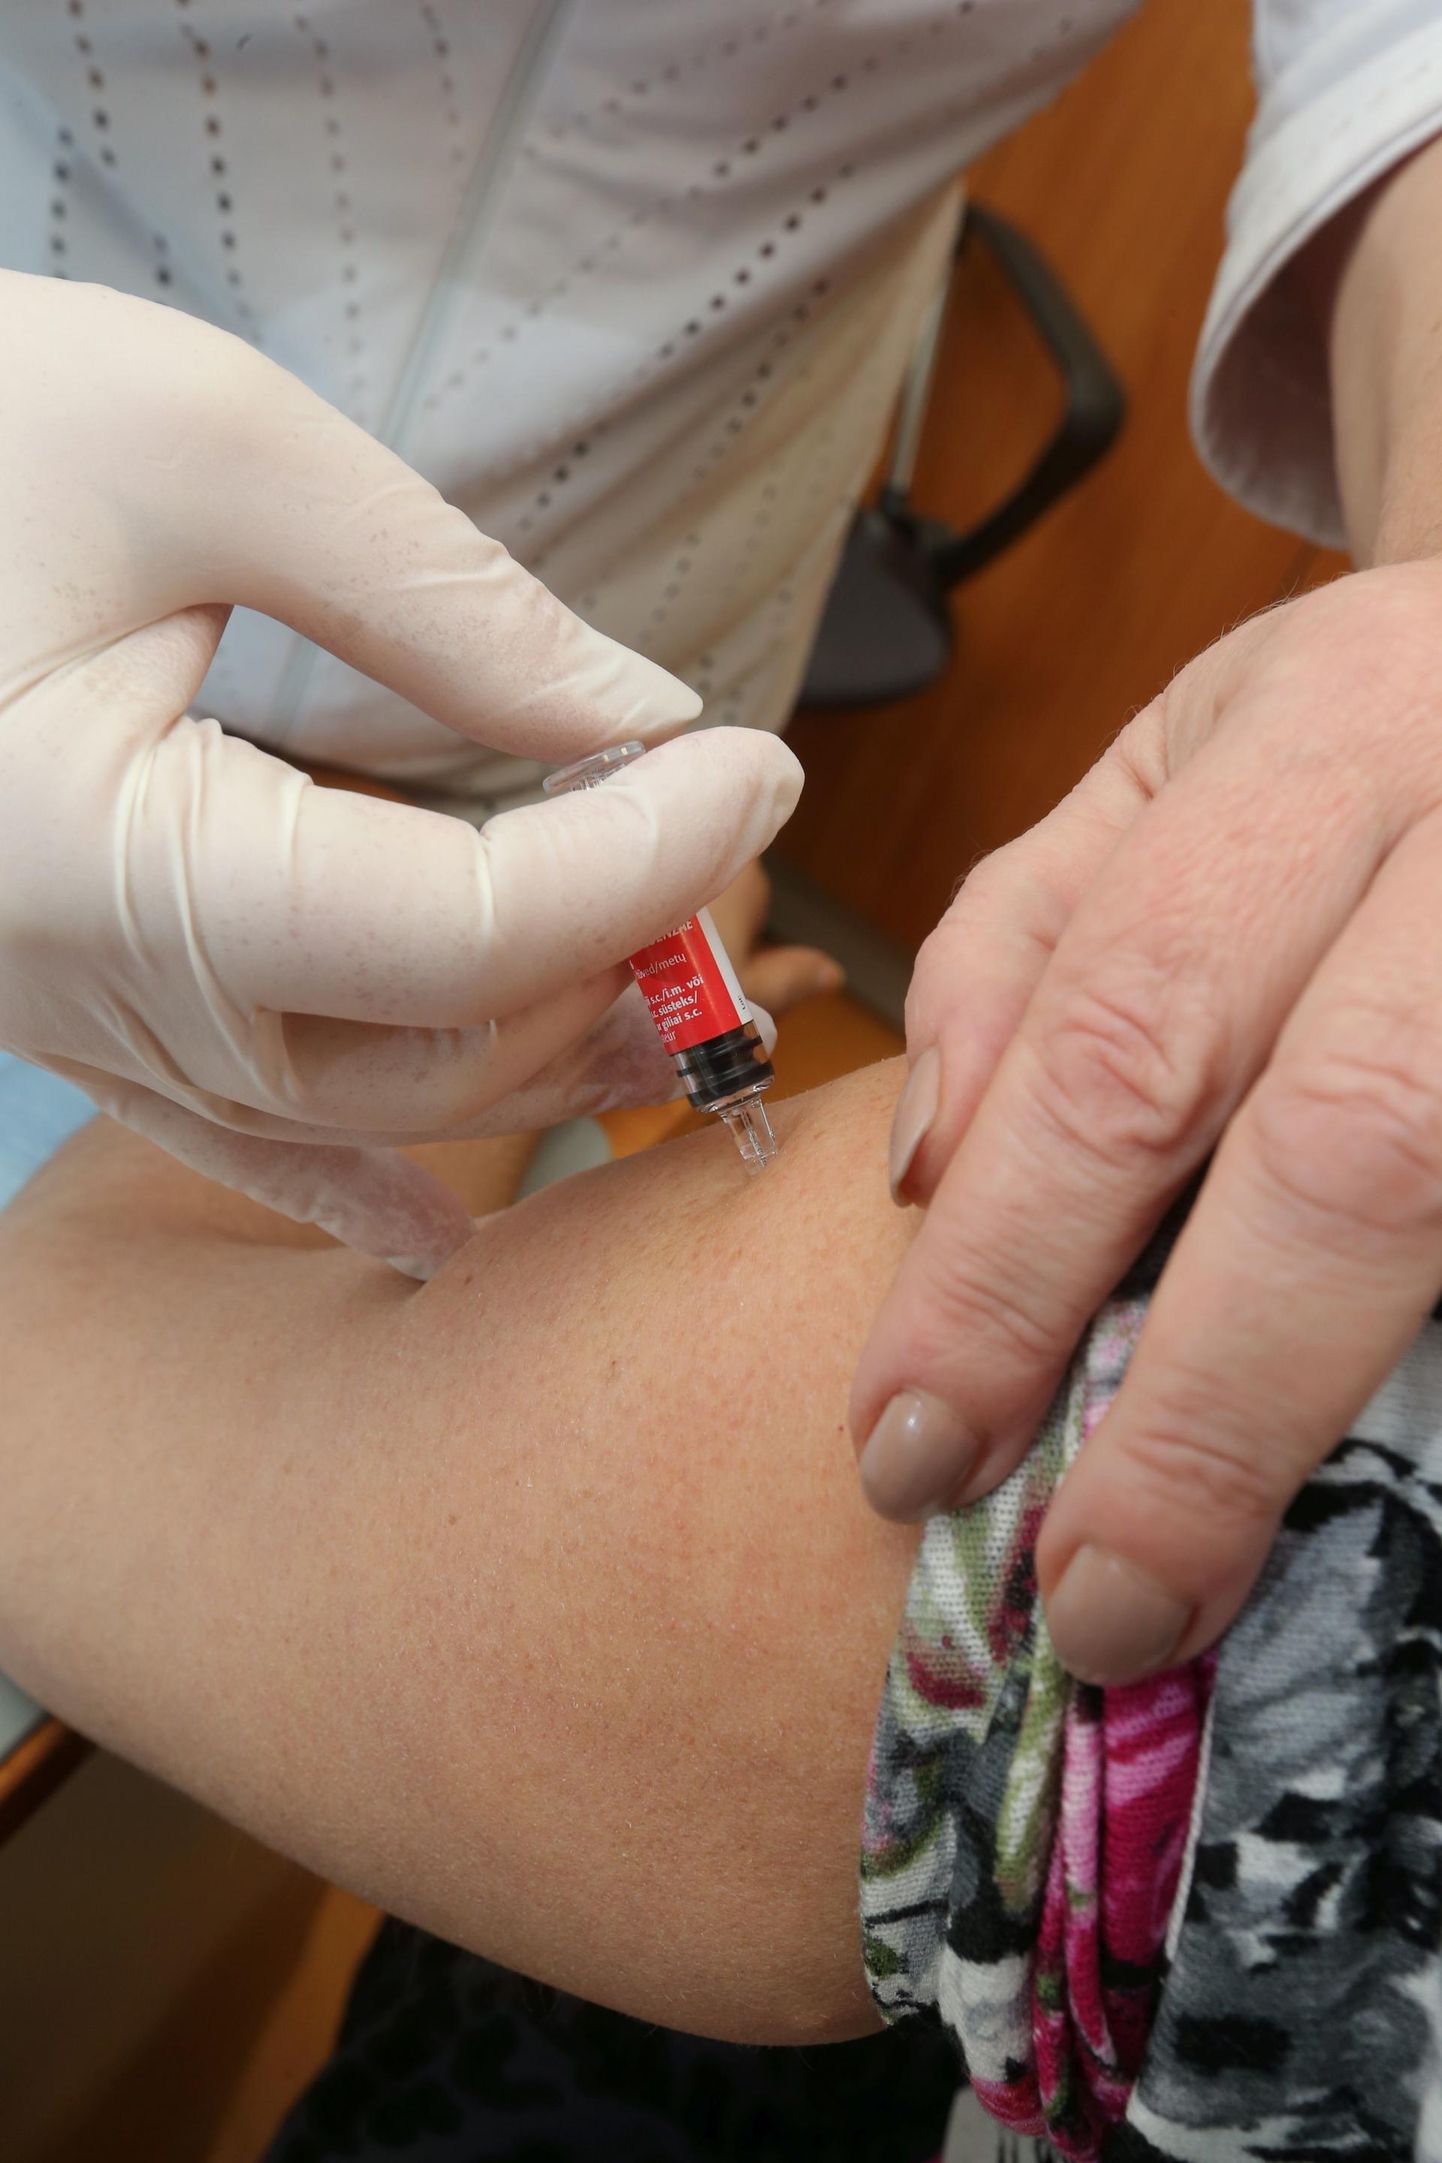 Grippi haigestumie riski saab vähendada selle vastu vaktsineerides.